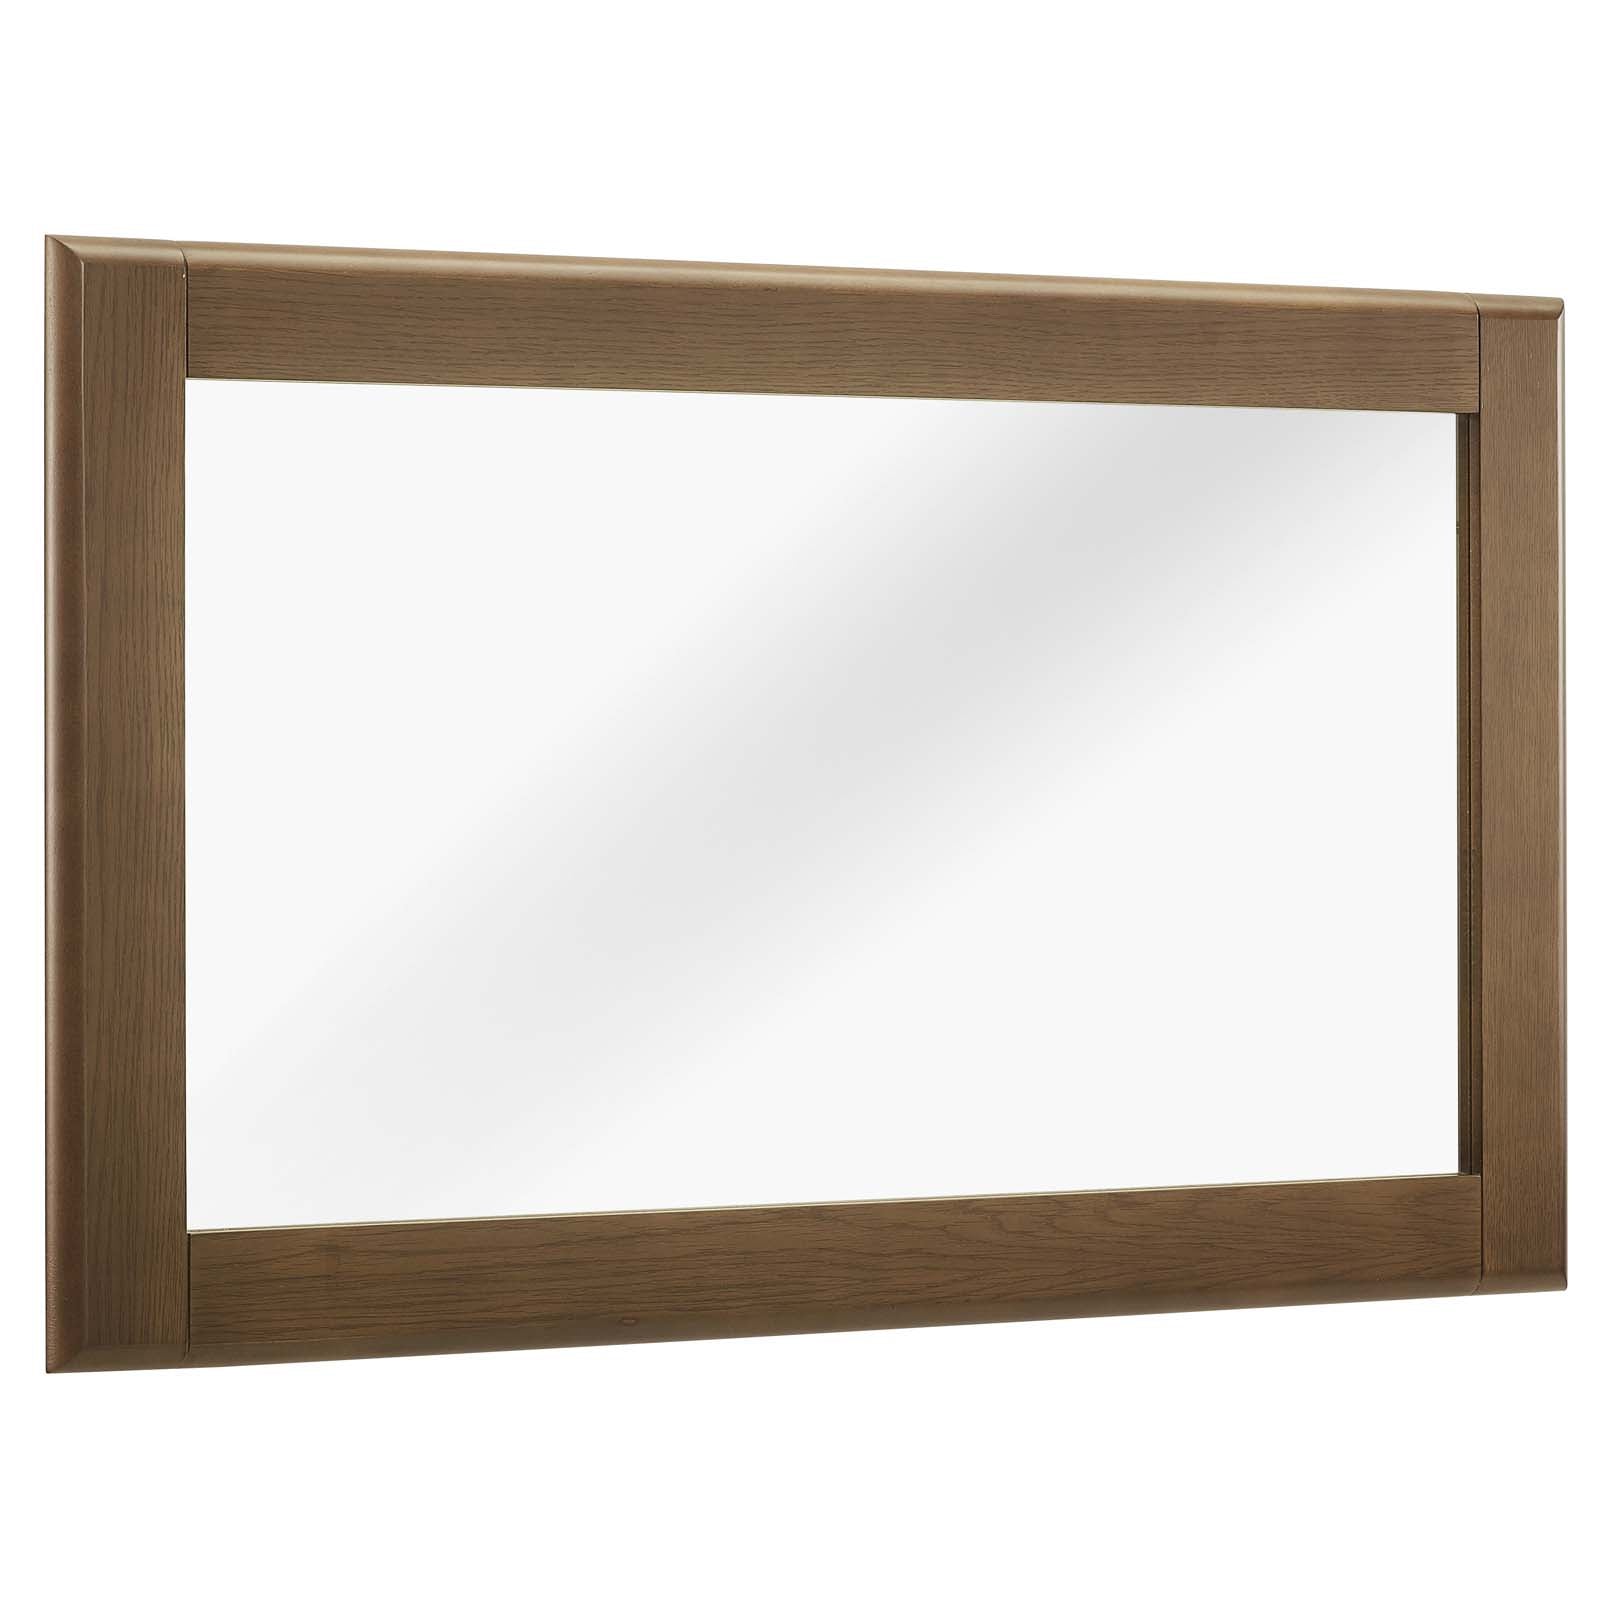 Modway Mirrors - Talwyn Wood Frame Mirror Chestnut